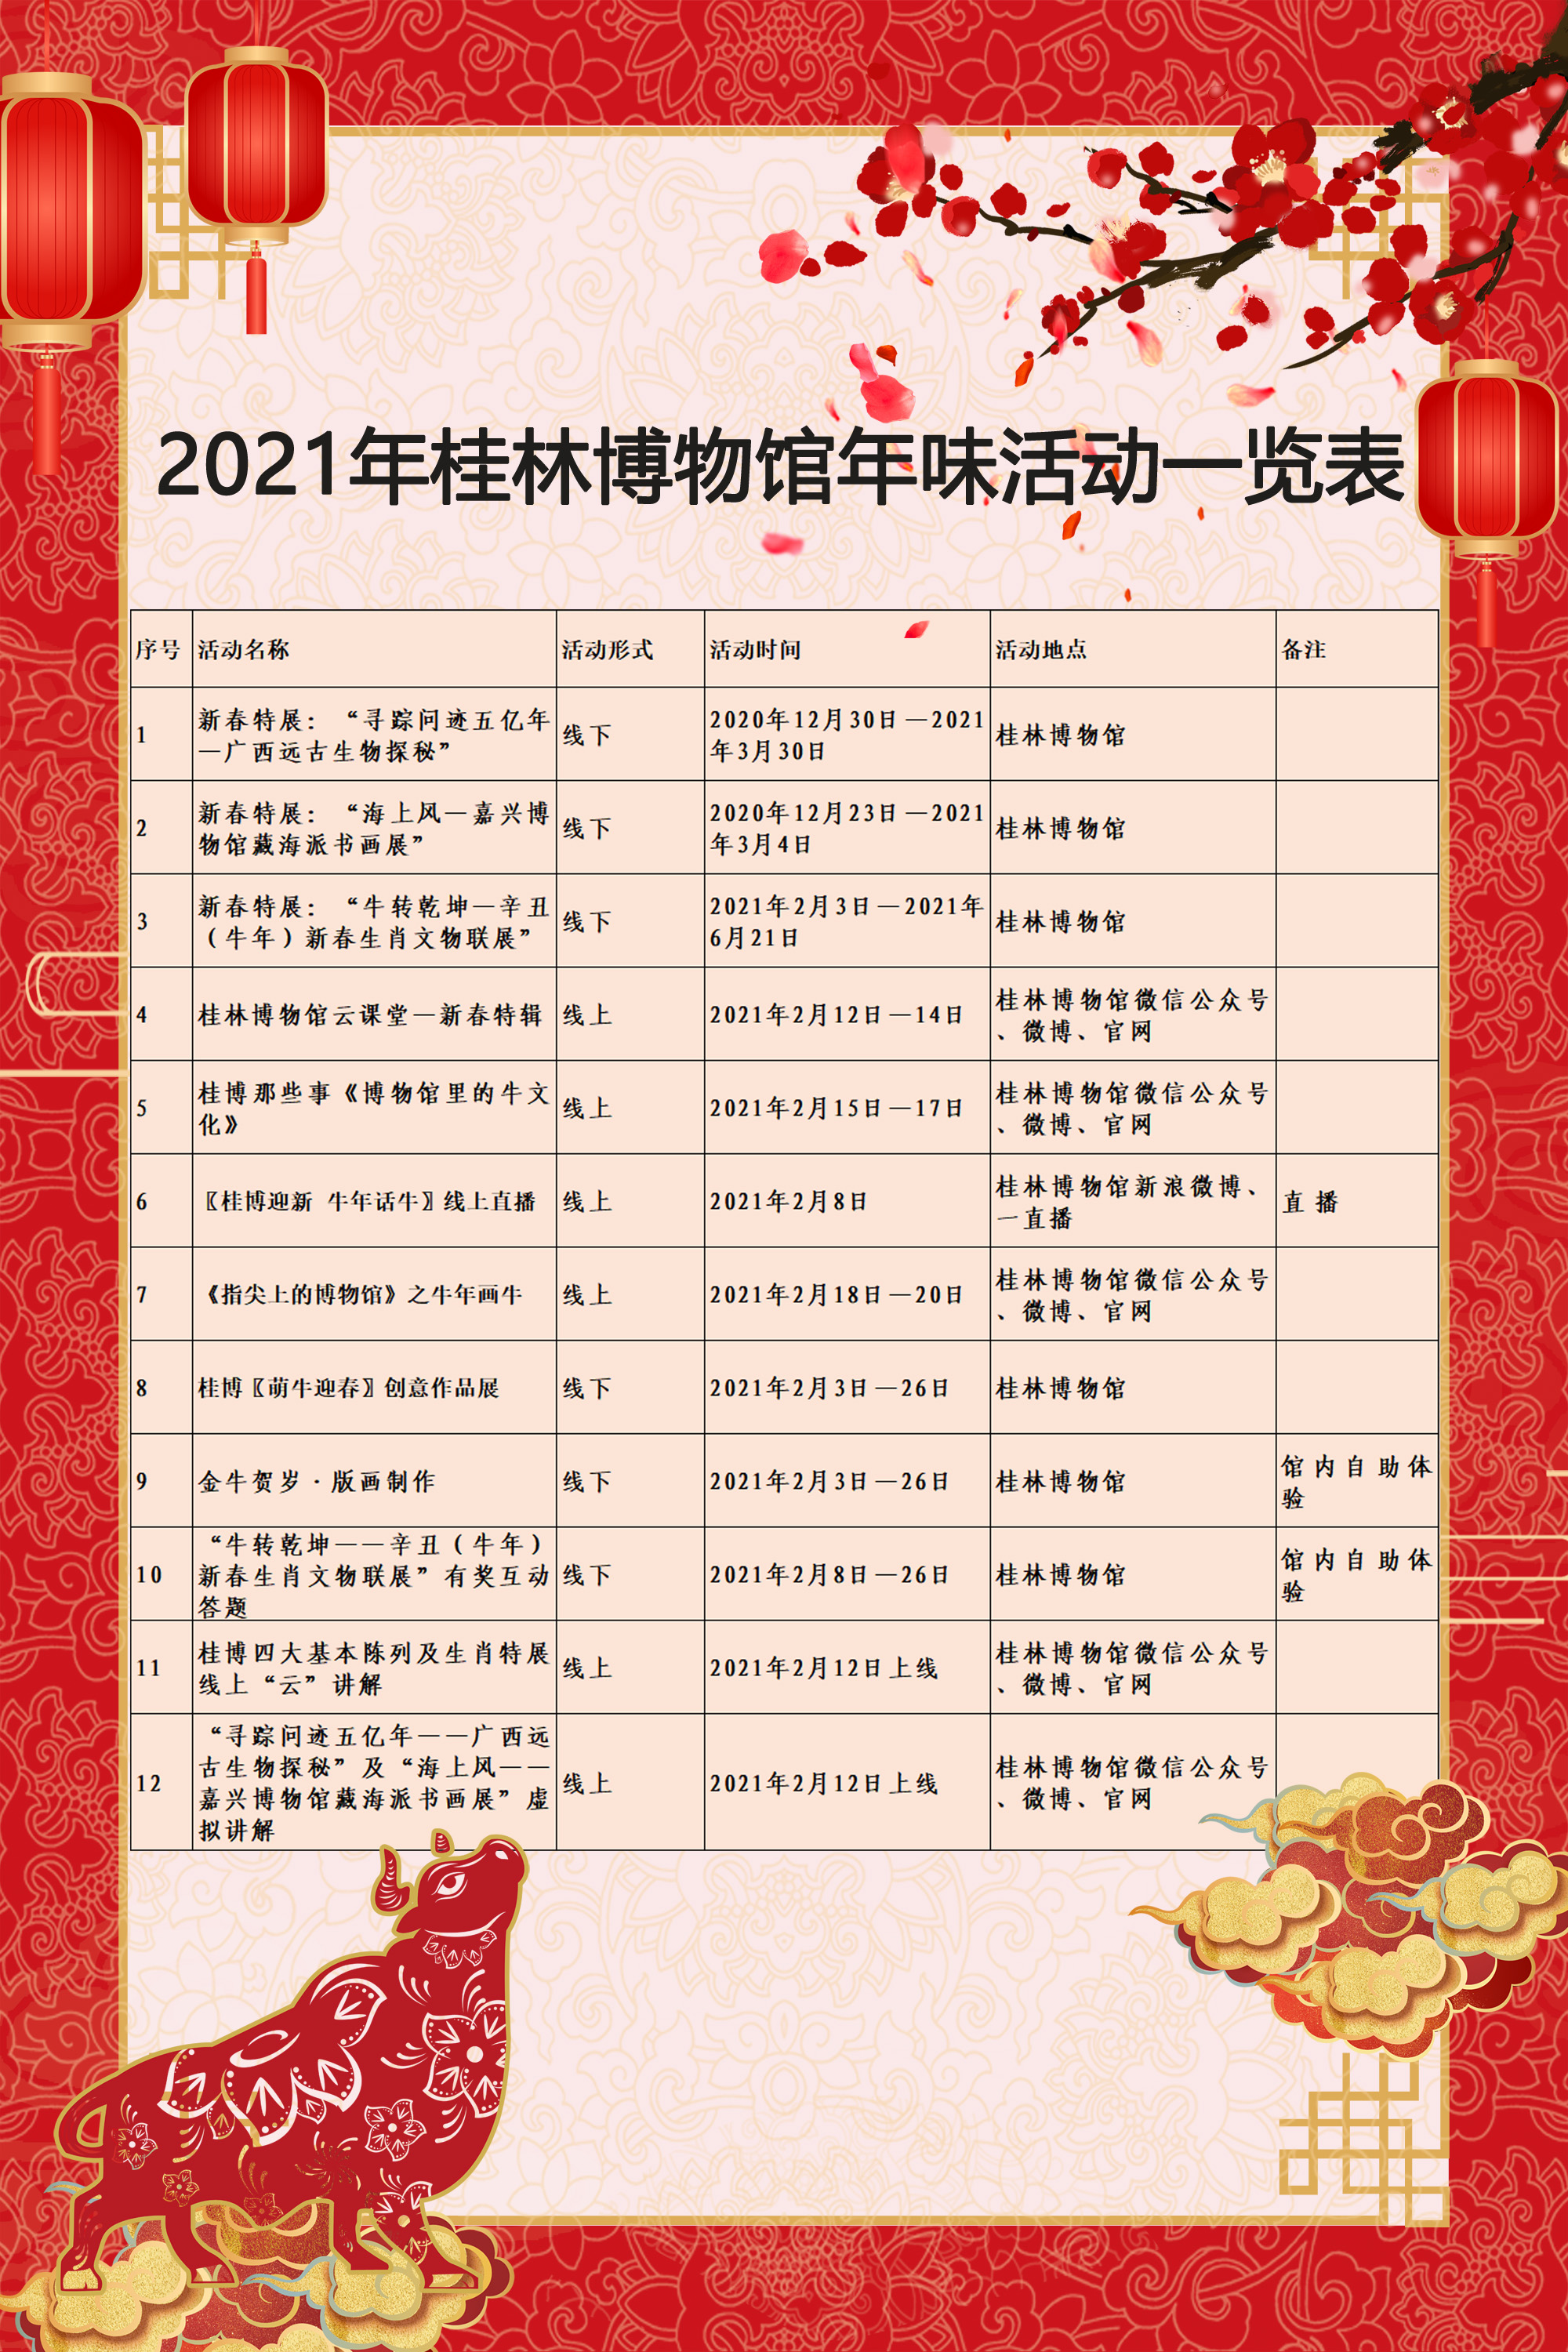 2021年桂林博物馆年味活动一览表0.jpg